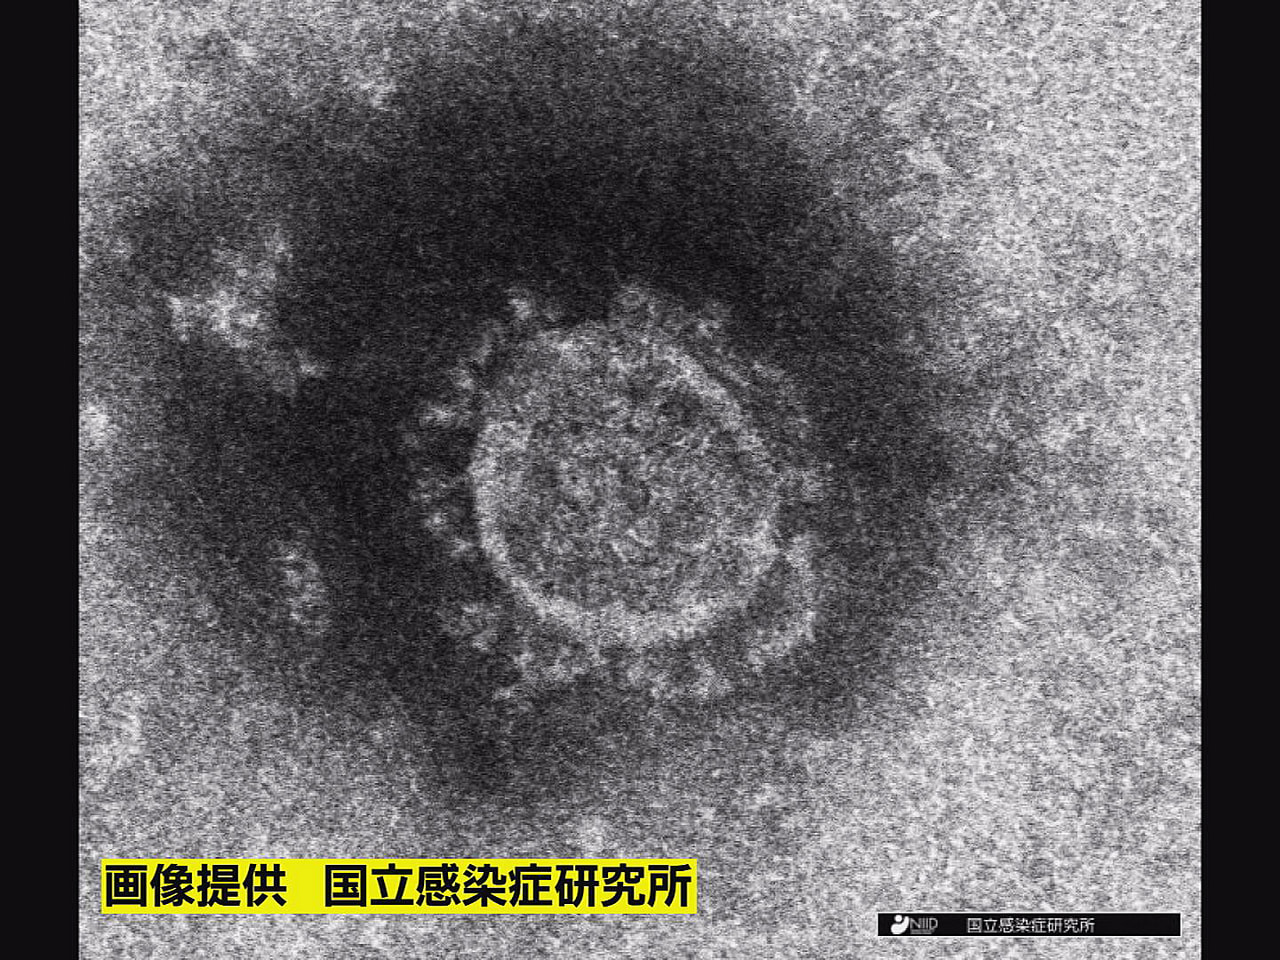 岐阜県は２７日、新型コロナウイルスの新規感染者が１１６人確認されたと発表しました...